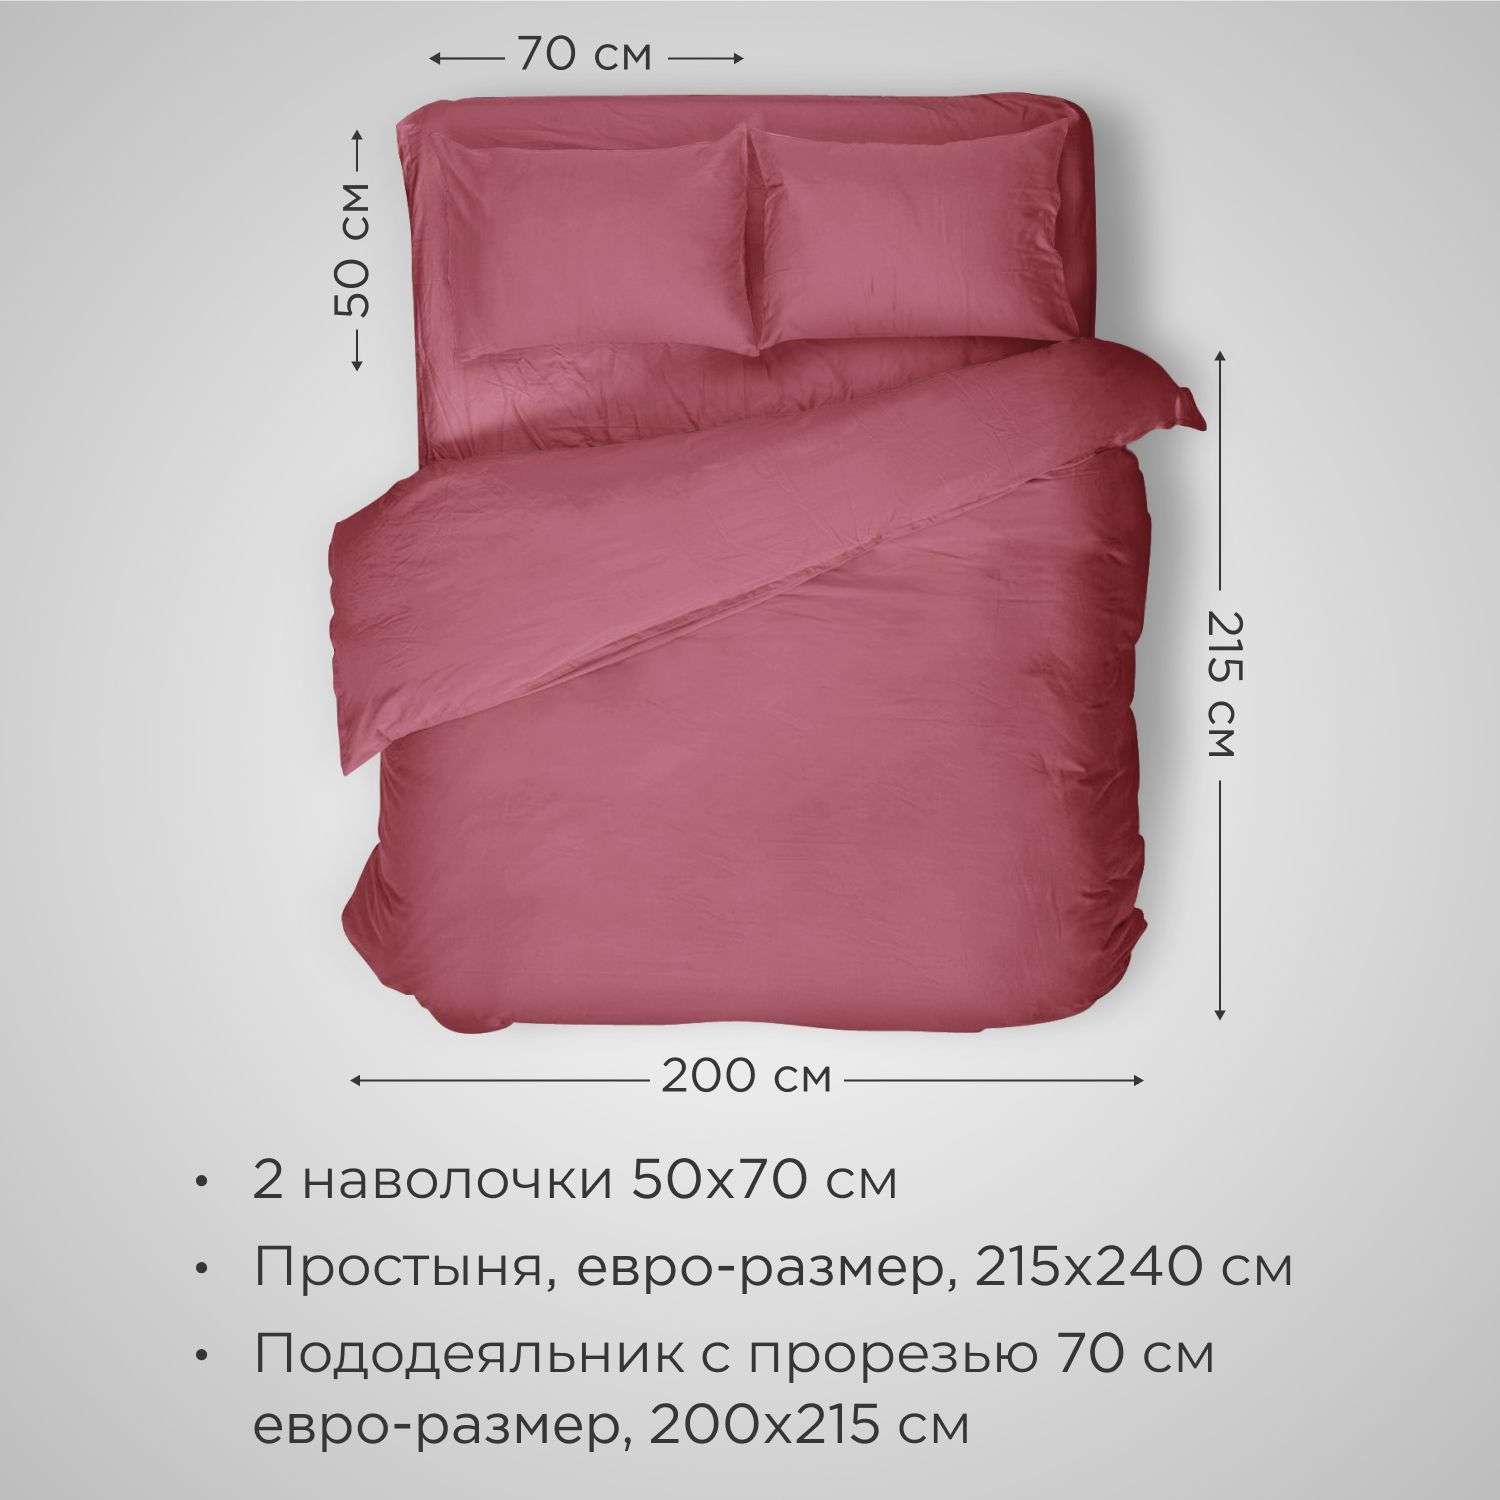 Комплект постельного белья SONNO URBAN FLOWERS евро-размер цвет Светлый гранат - фото 2